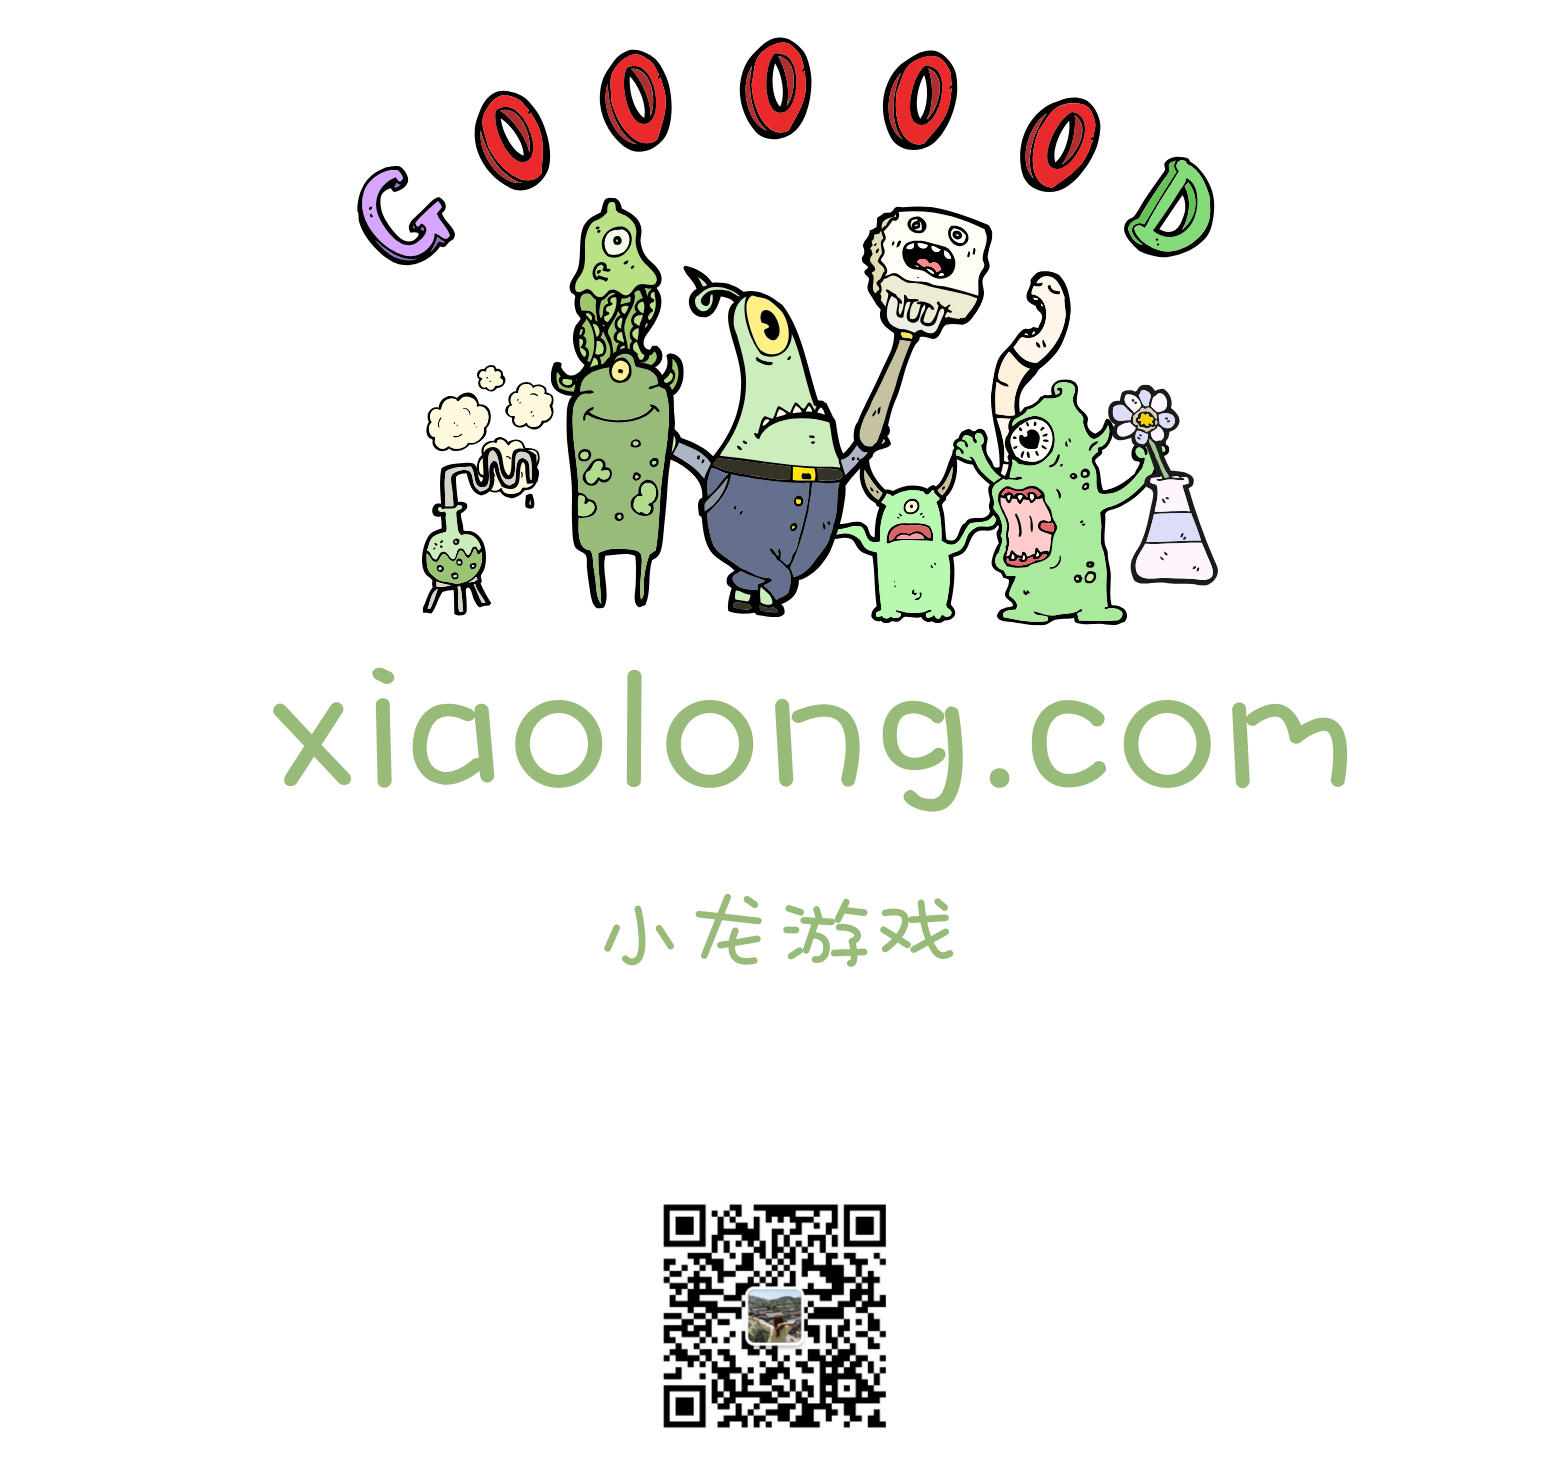 xiaolong.com